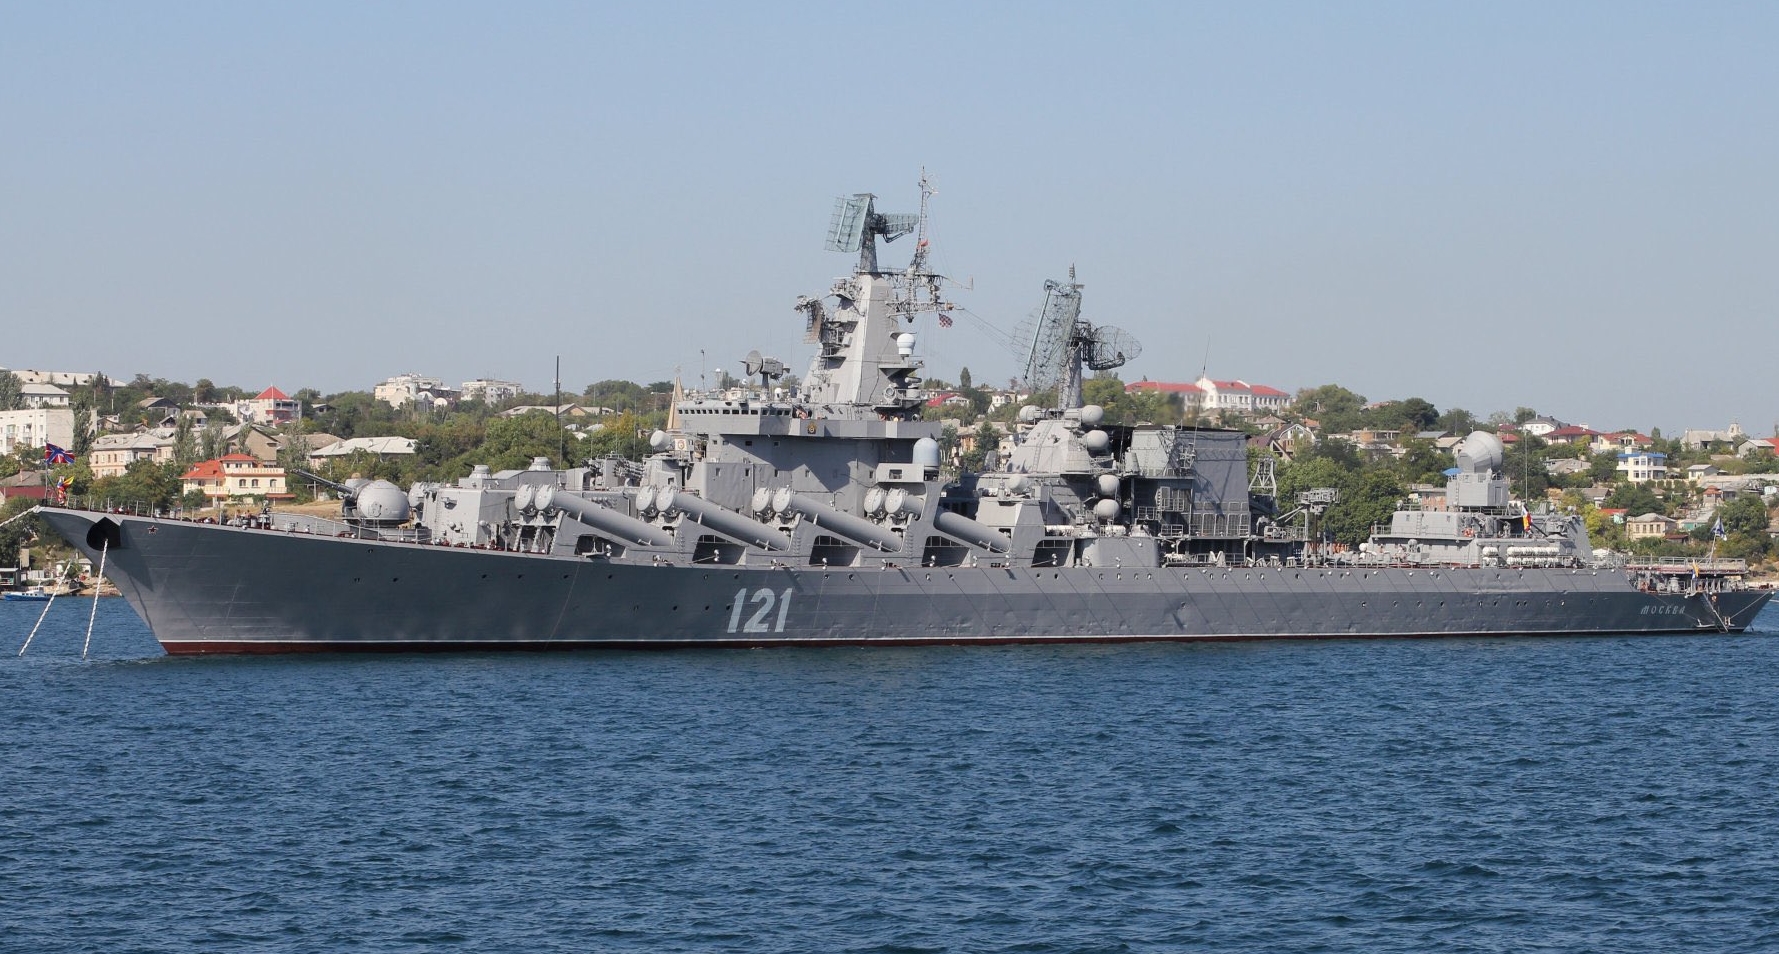 Νεκροί πλοίο Moskva: Ερωτήματα σχετικά με το εξαφανισμένο πλήρωμα